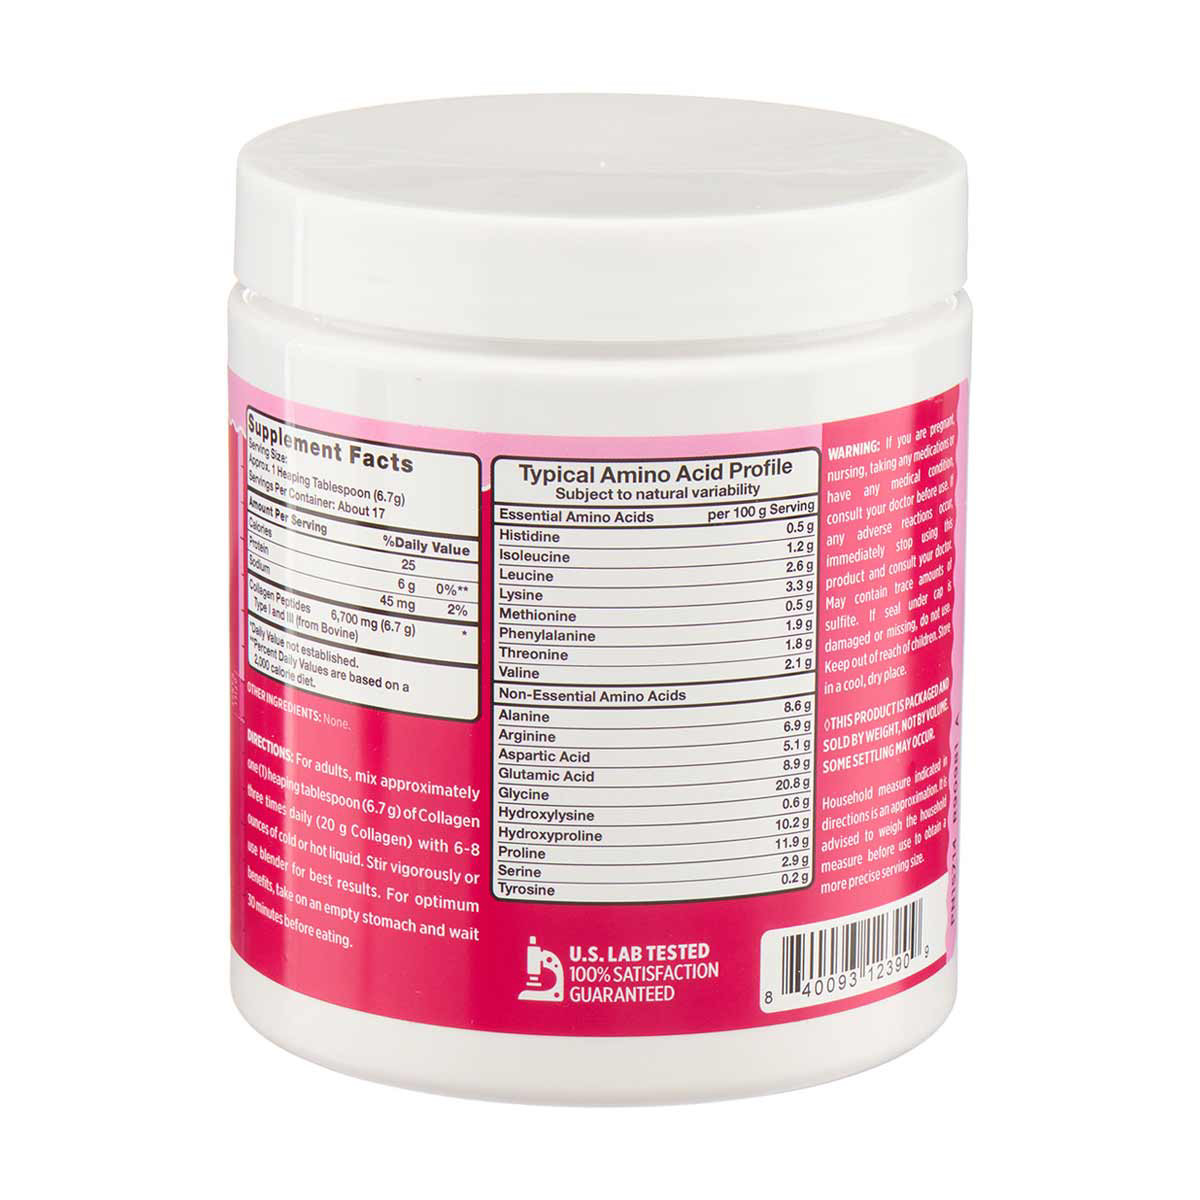 Pink Collagen Peptides Unflavored Powder, 4.3 oz